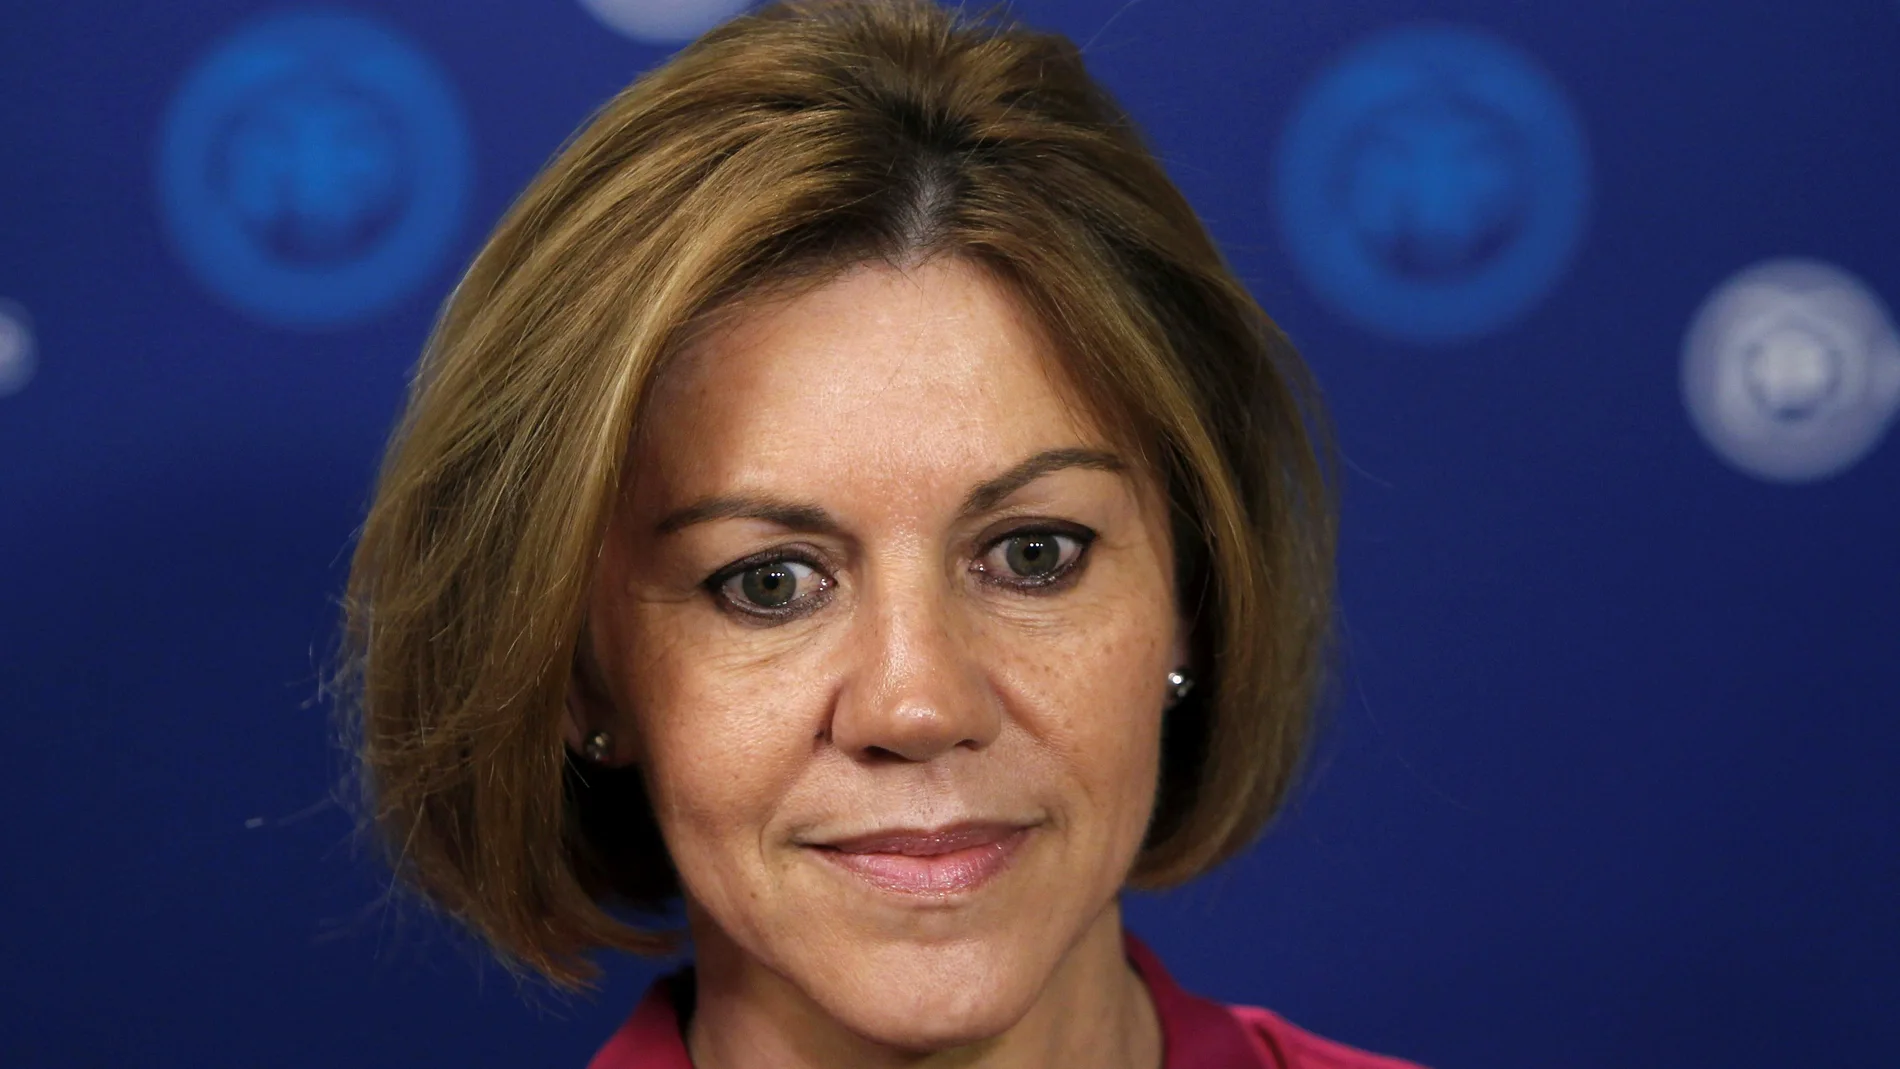 La secretaria general del PP y candidata a la Presidencia del partido, María Dolores de Cospedal